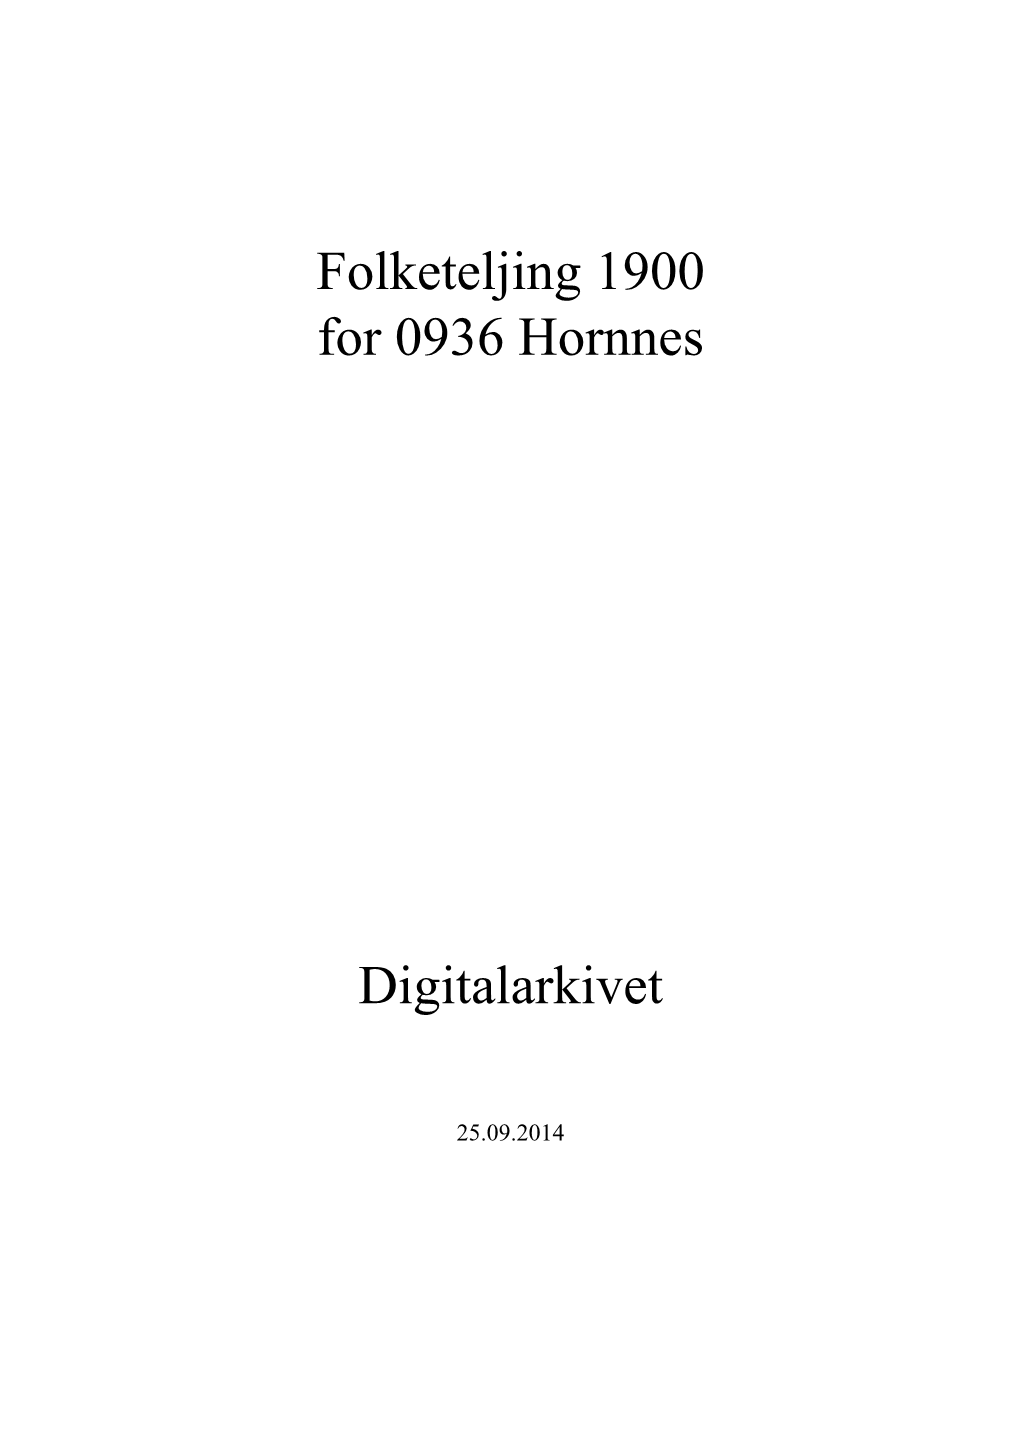 Folketeljing 1900 for 0936 Hornnes Digitalarkivet